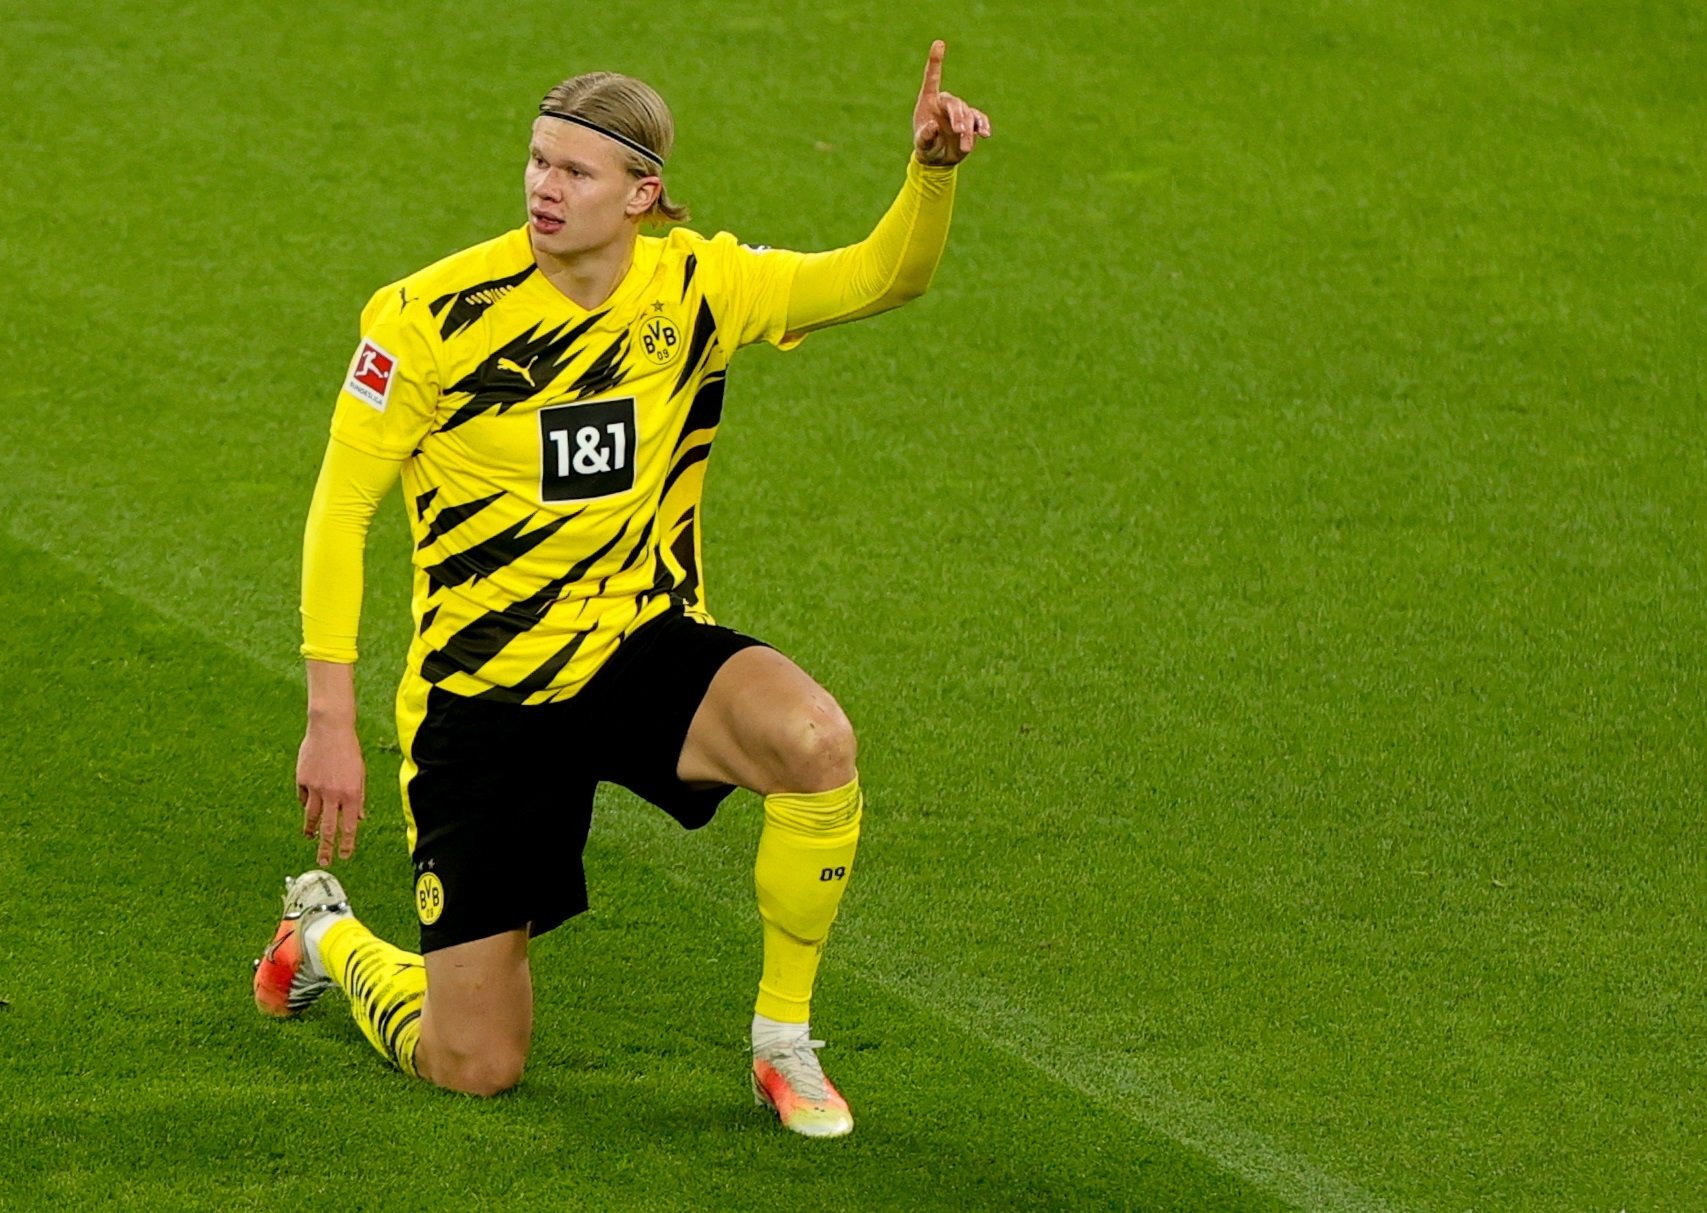 El Borussia Dortmund pone precio a Haaland